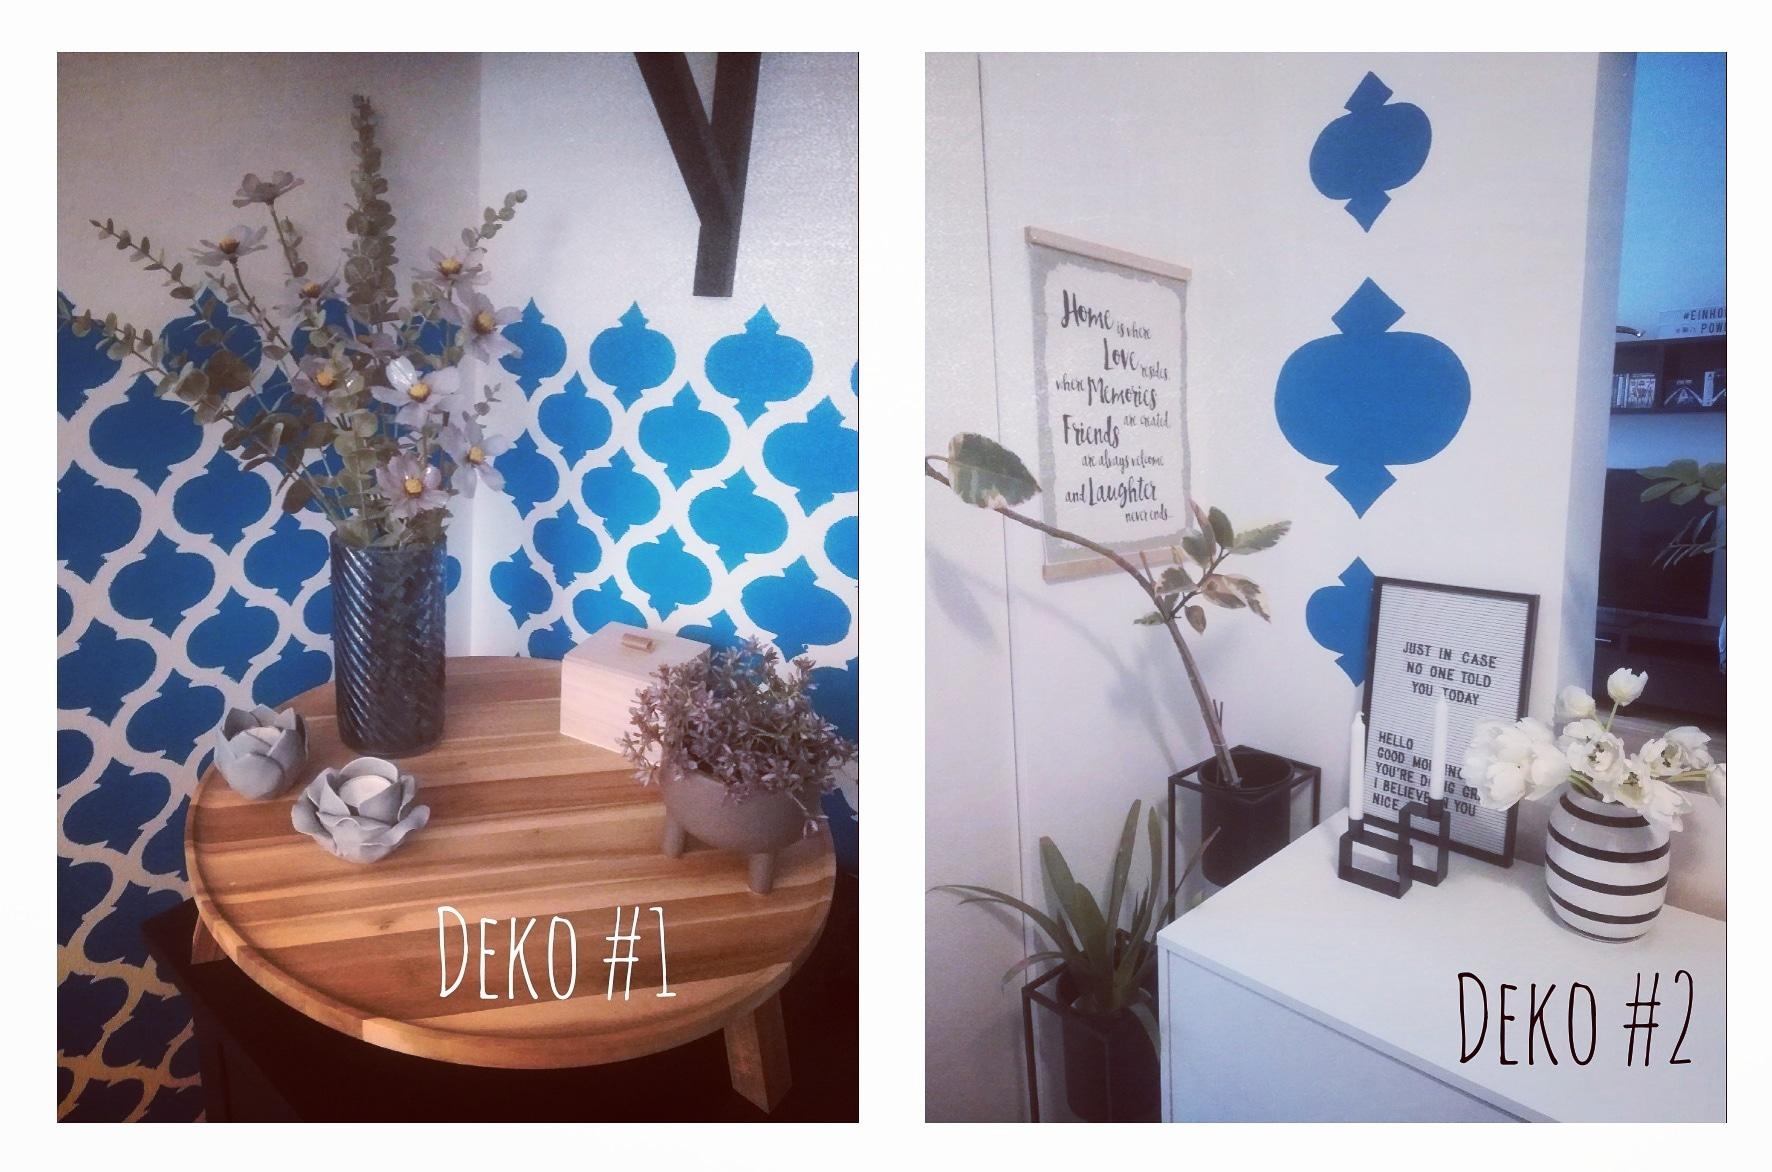 Das ist die #Deko im Wohnbereich 🔵
Jeder Raum hat ein Farbkonzept. 

#frühlingsdeko #livingchallenge #interiordesign